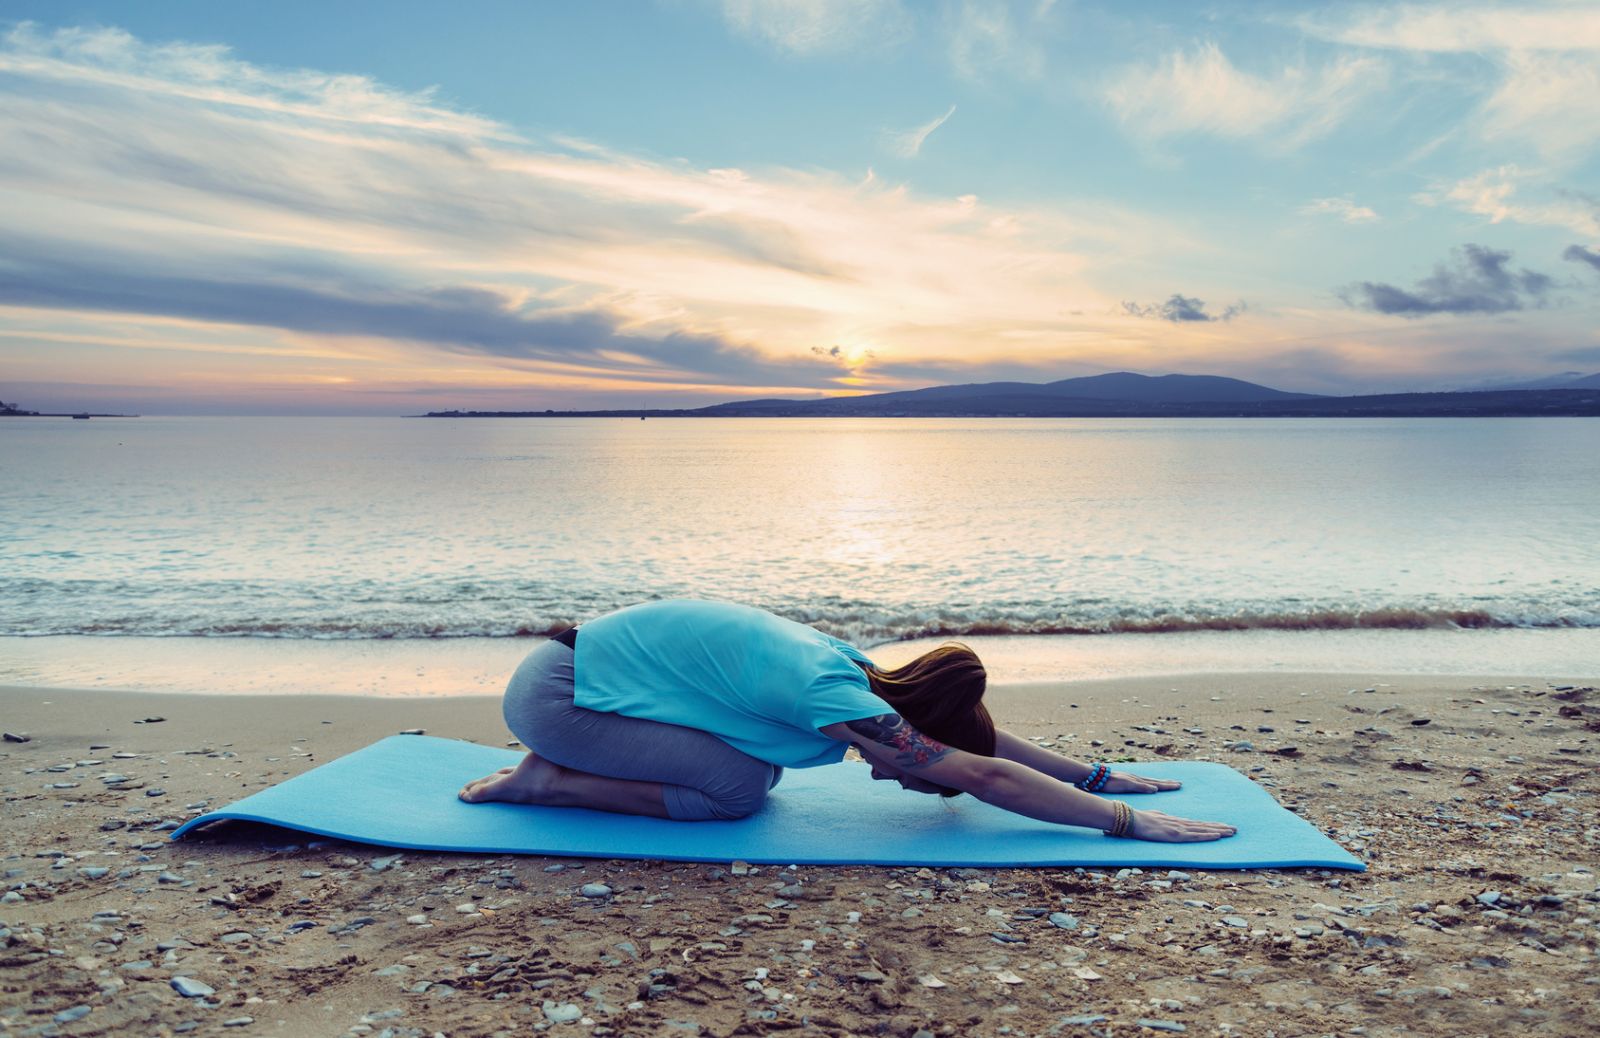 Le 5 spiagge italiane dove fare yoga gratis 